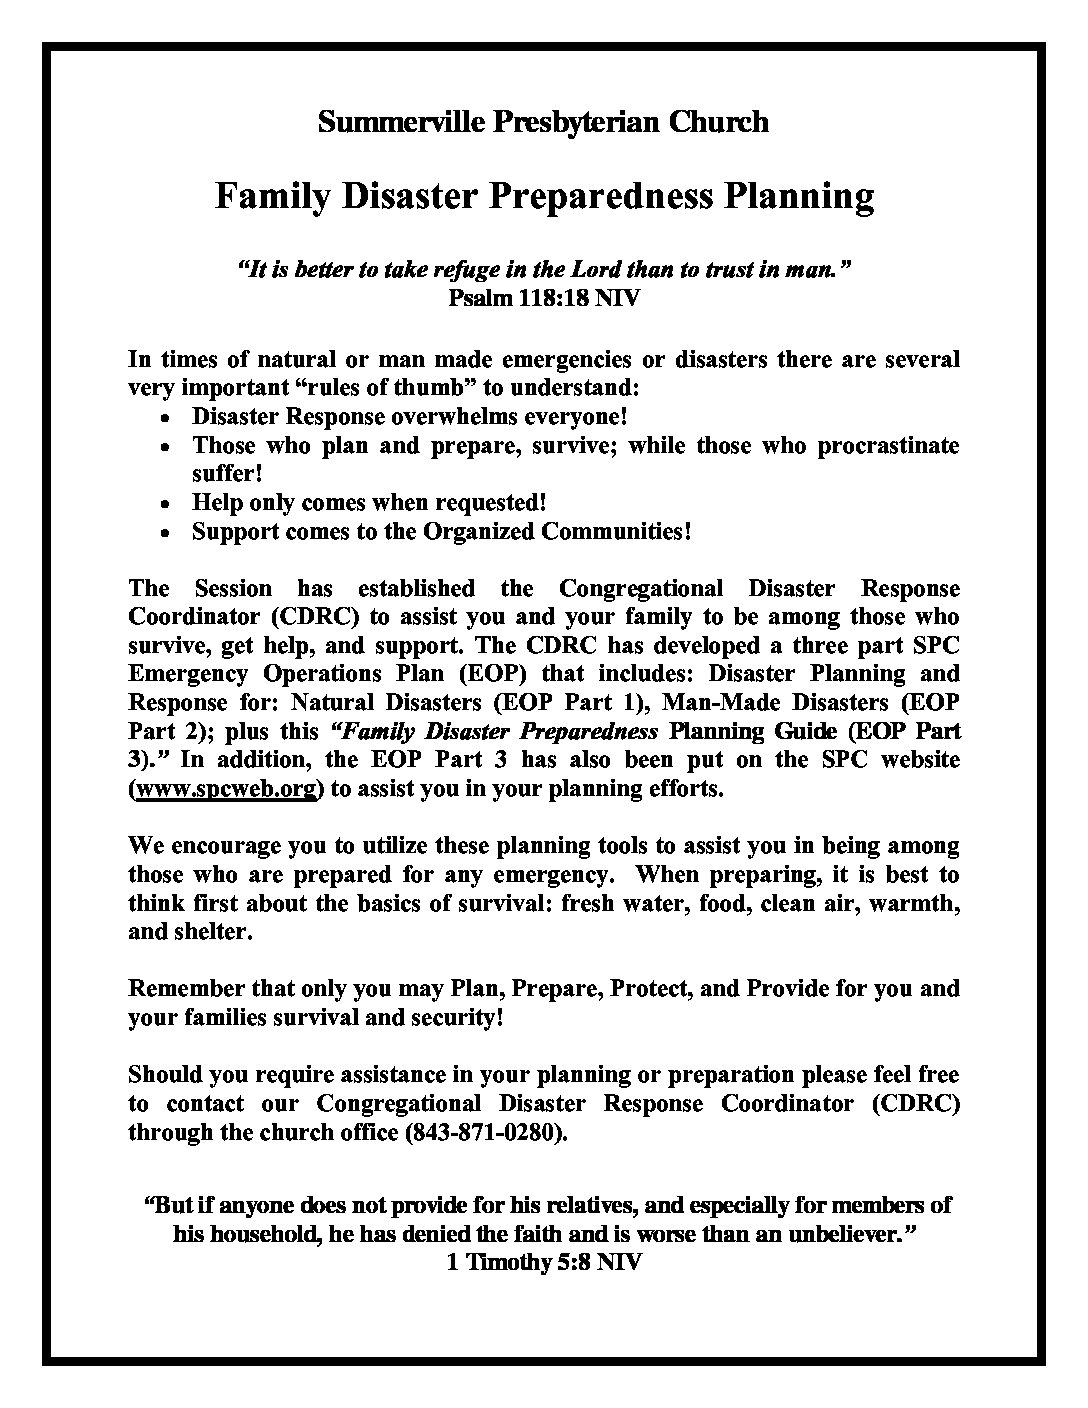 summerville presbyterian family disaster preparedness planning